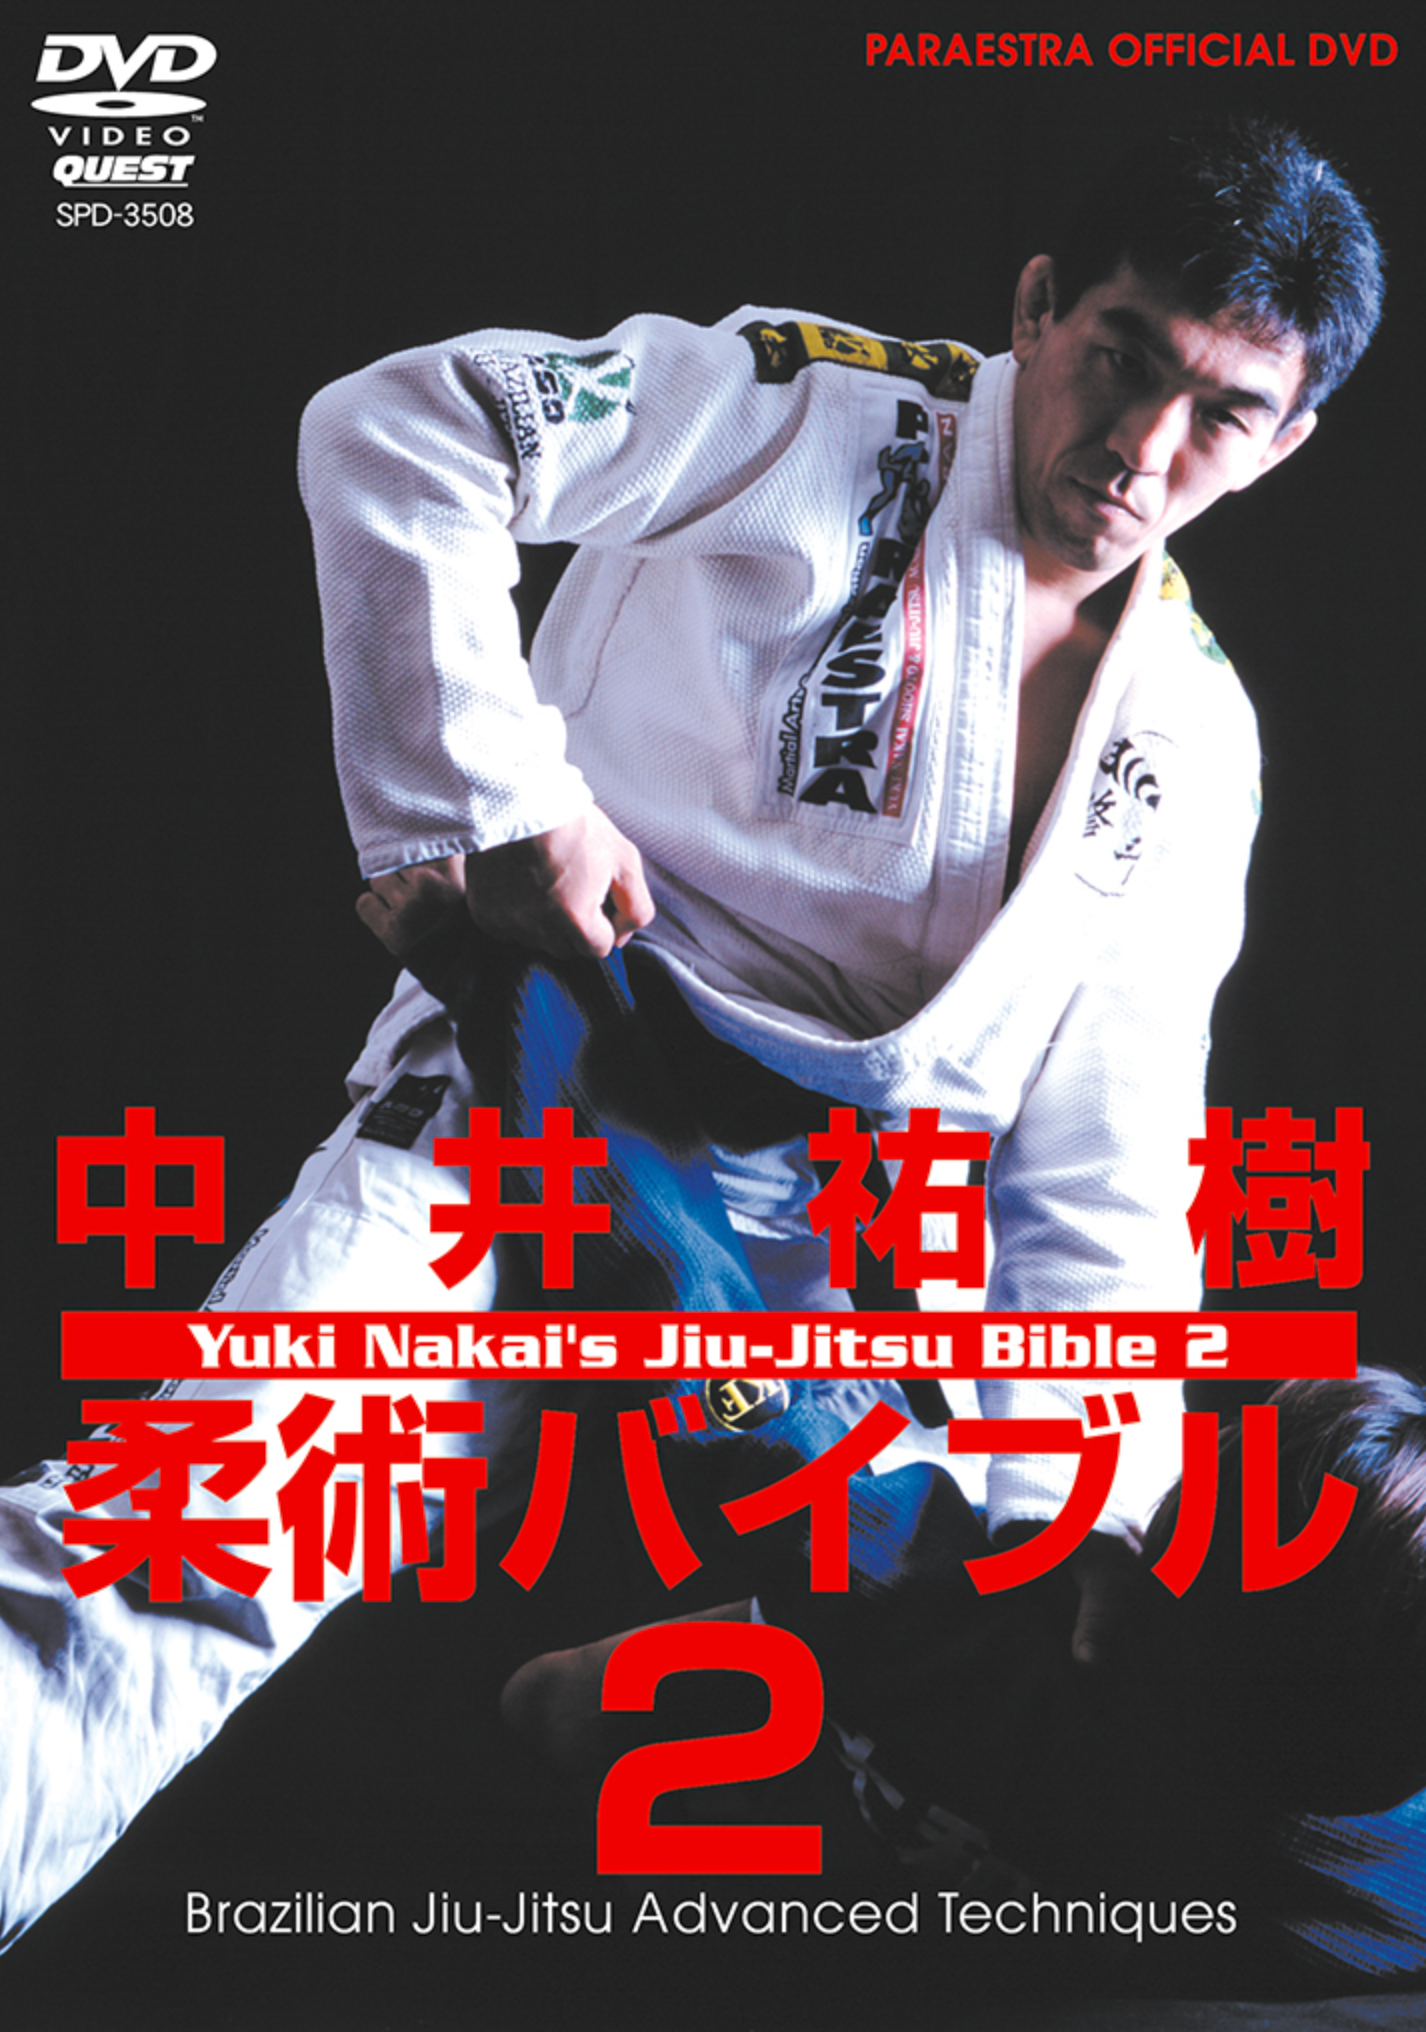 Jiu-jitsu Bible DVD Vol 2 with Yuki Nakai - Budovideos Inc